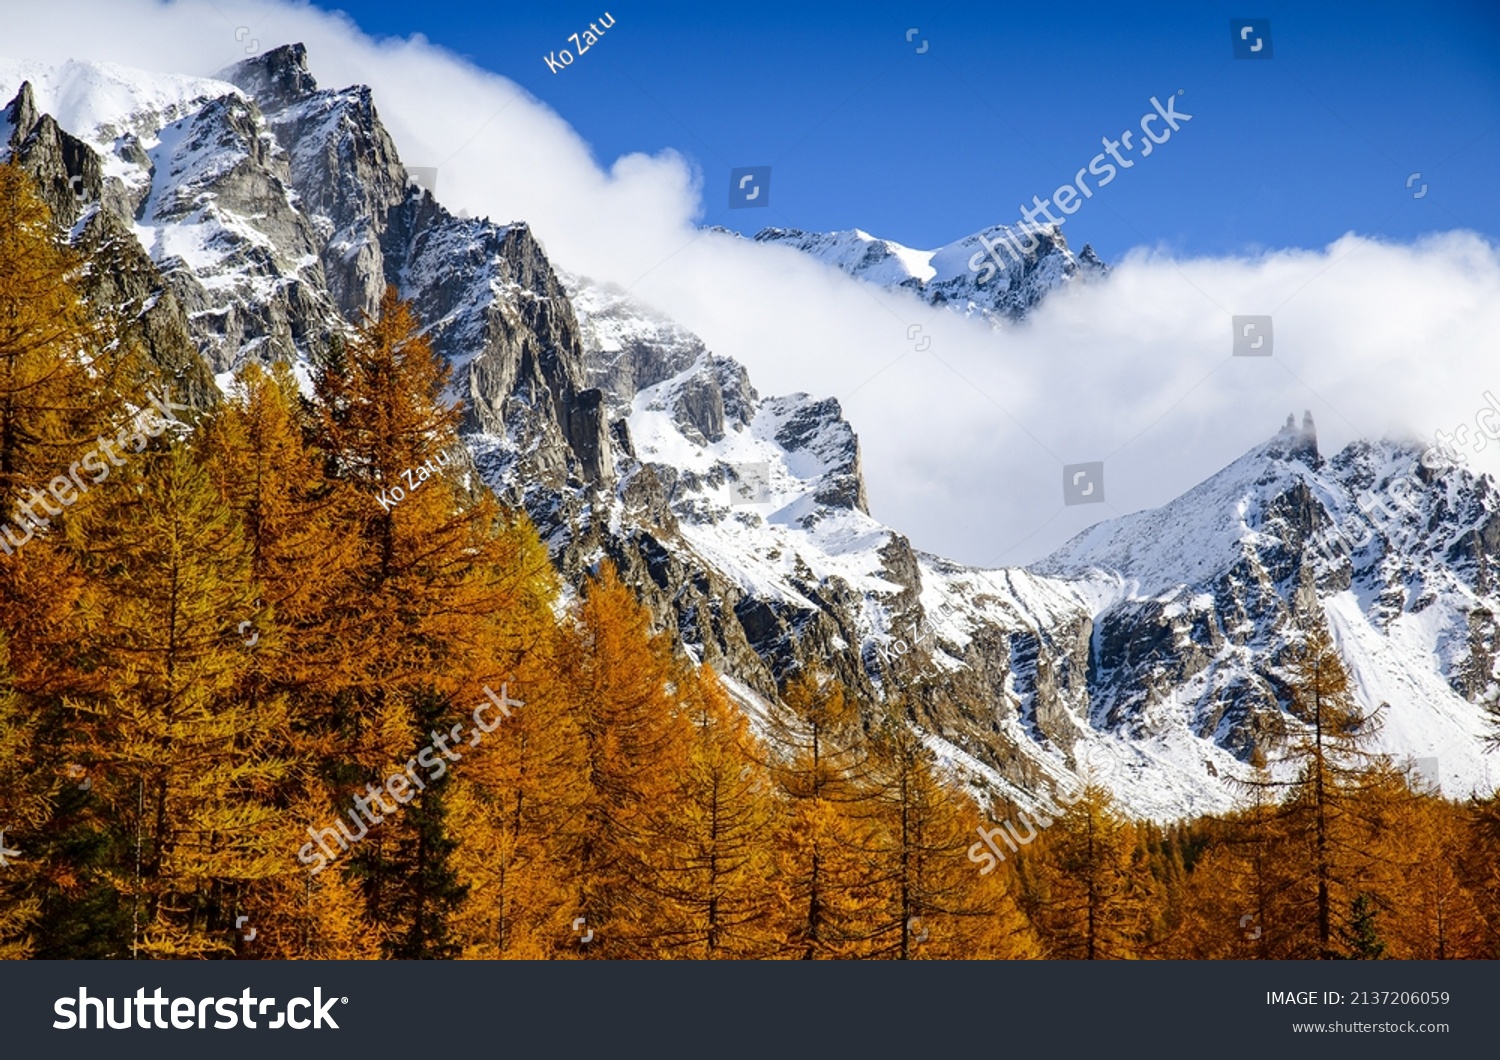 Mountain peaks snow in autumn. Autumn snow on mountain peaks #2137206059